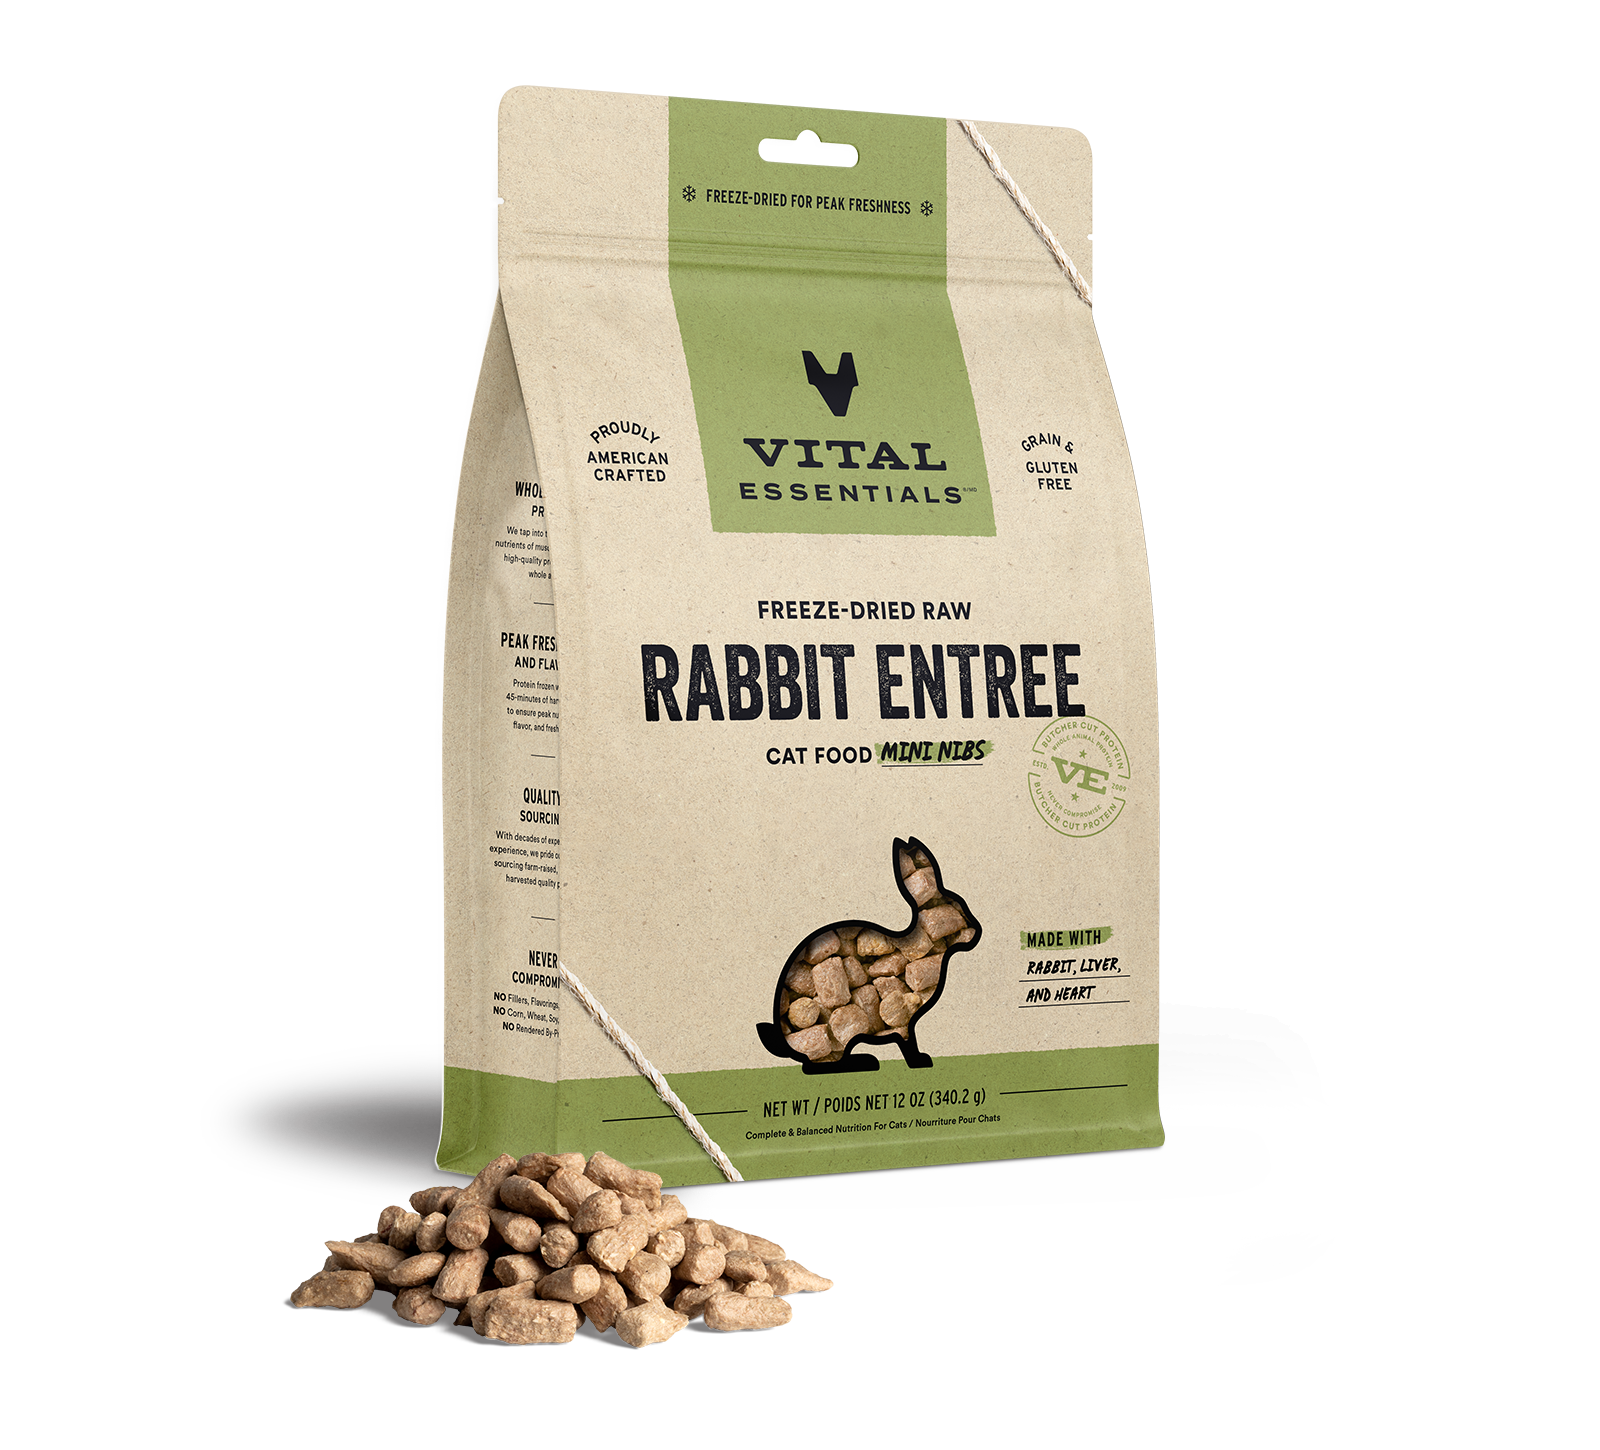 Vital Essentials Freeze-Dried Raw Rabbit Entree Cat Food Mini Nibs, 12 oz - Food